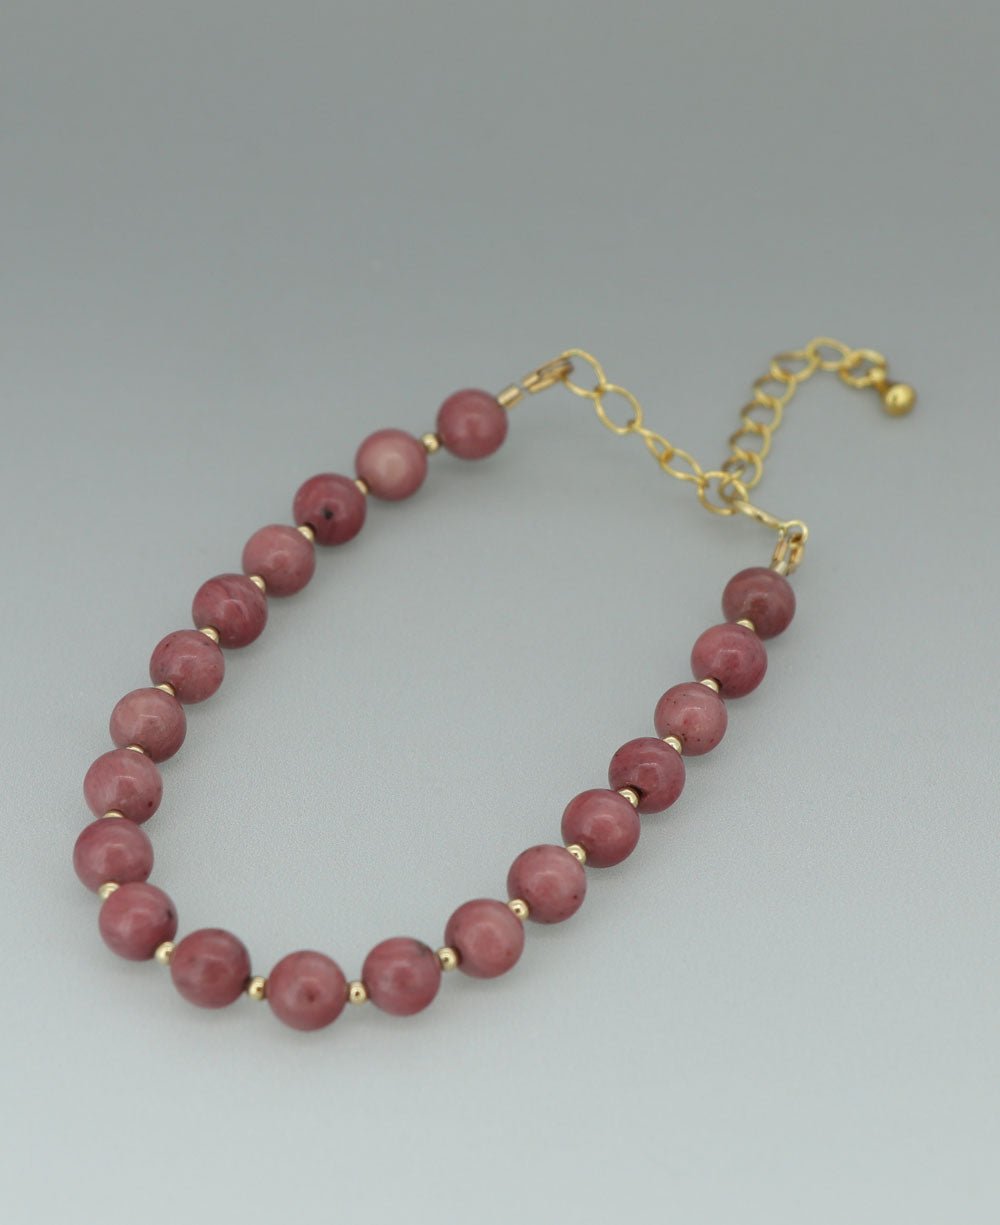 Gemstone Wrist Mala Bracelet, 20 Beads - Bracelets Rhodonite